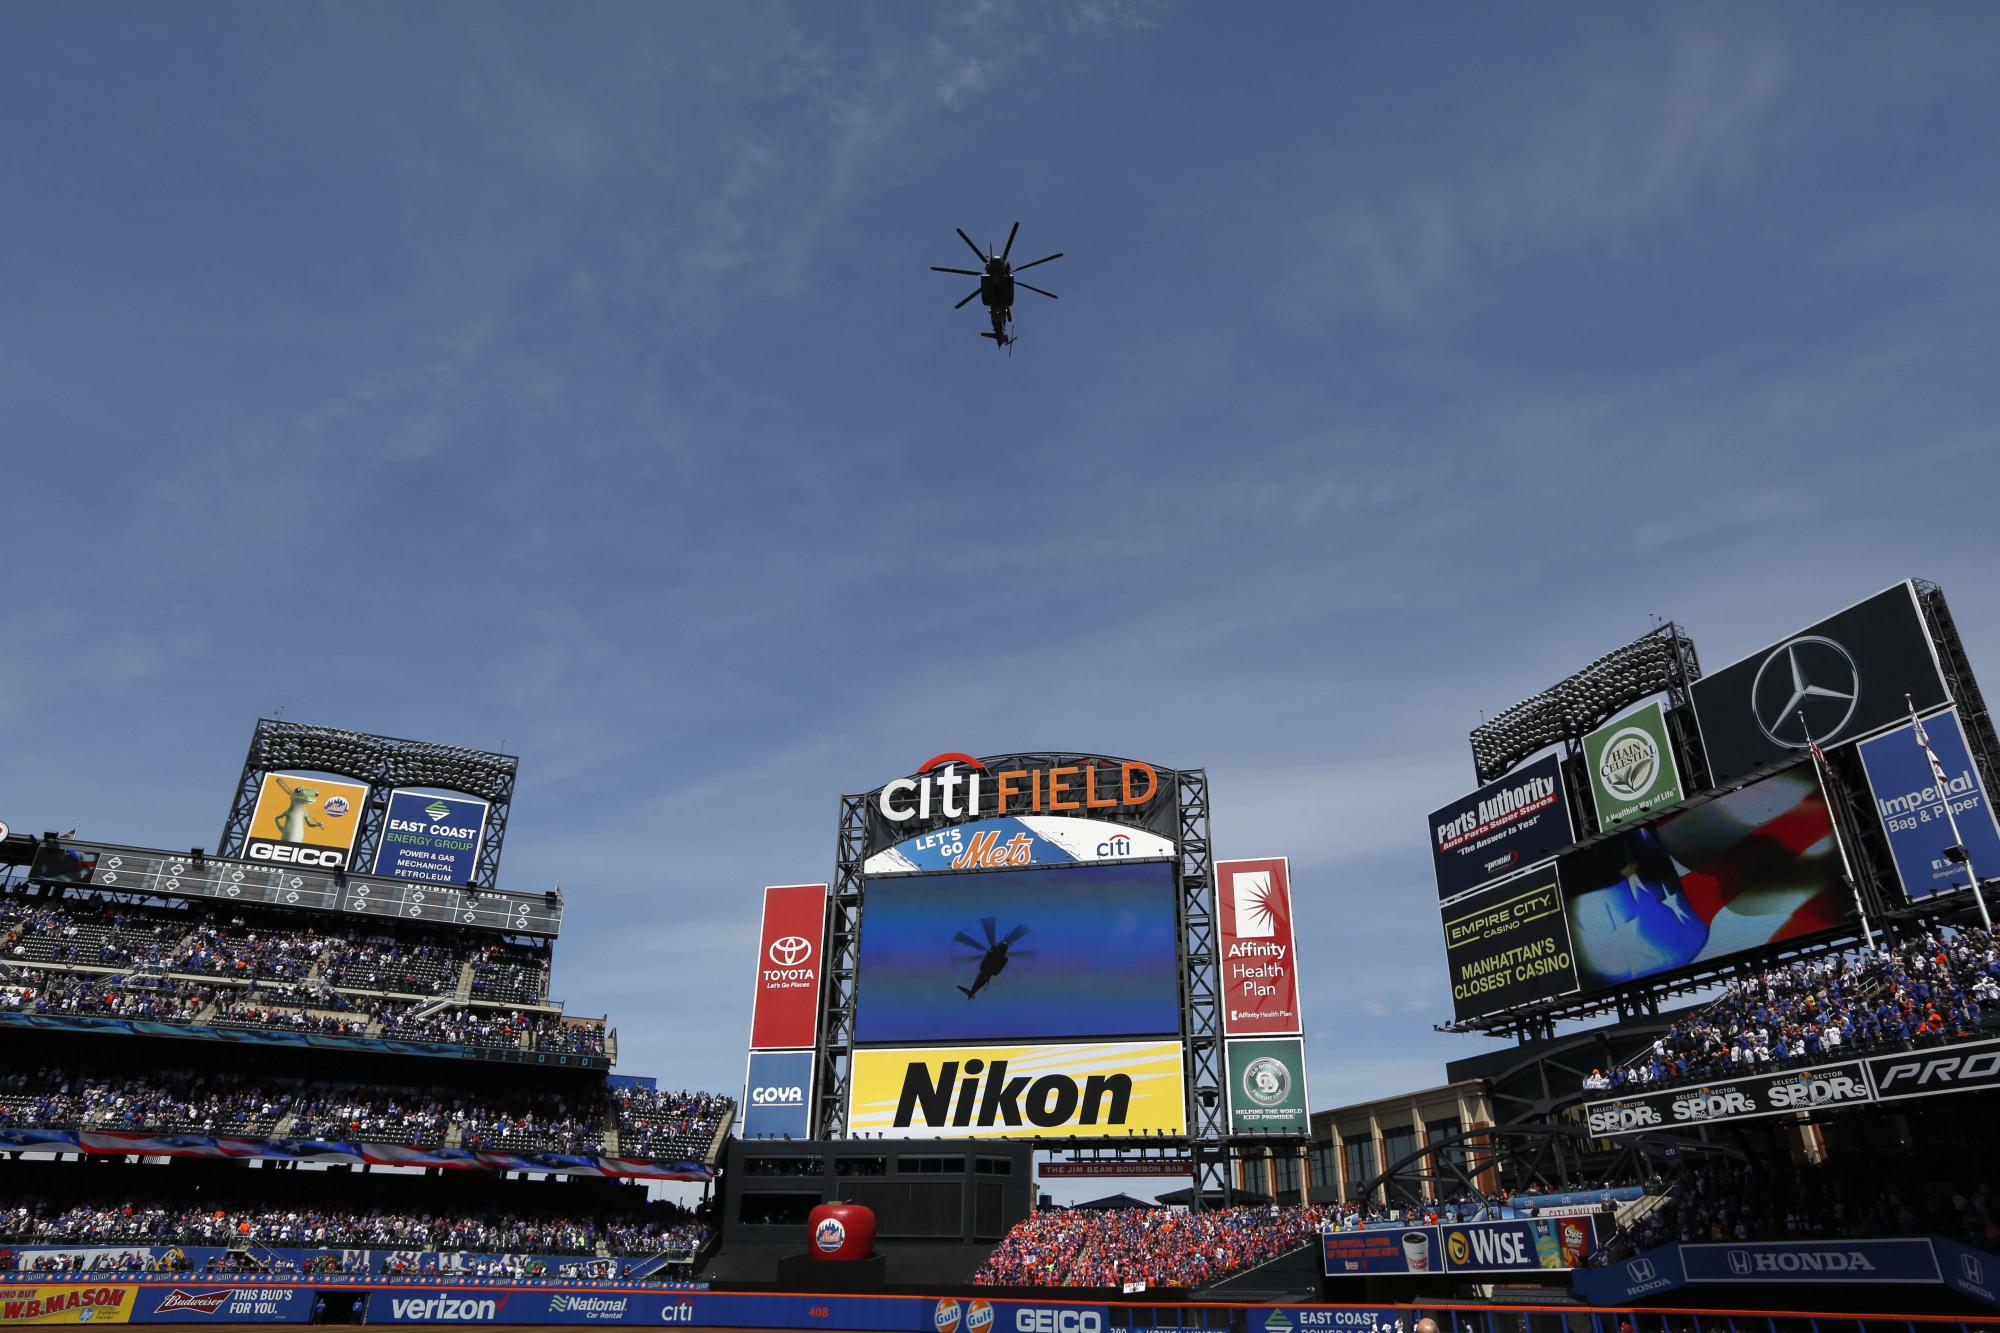 Un helicóptero vuela sobre el Citi Field durante la ceremonia de apertura antes del juego en que los Mets de Nueva York recibieron a los Bravos de Atlanta.